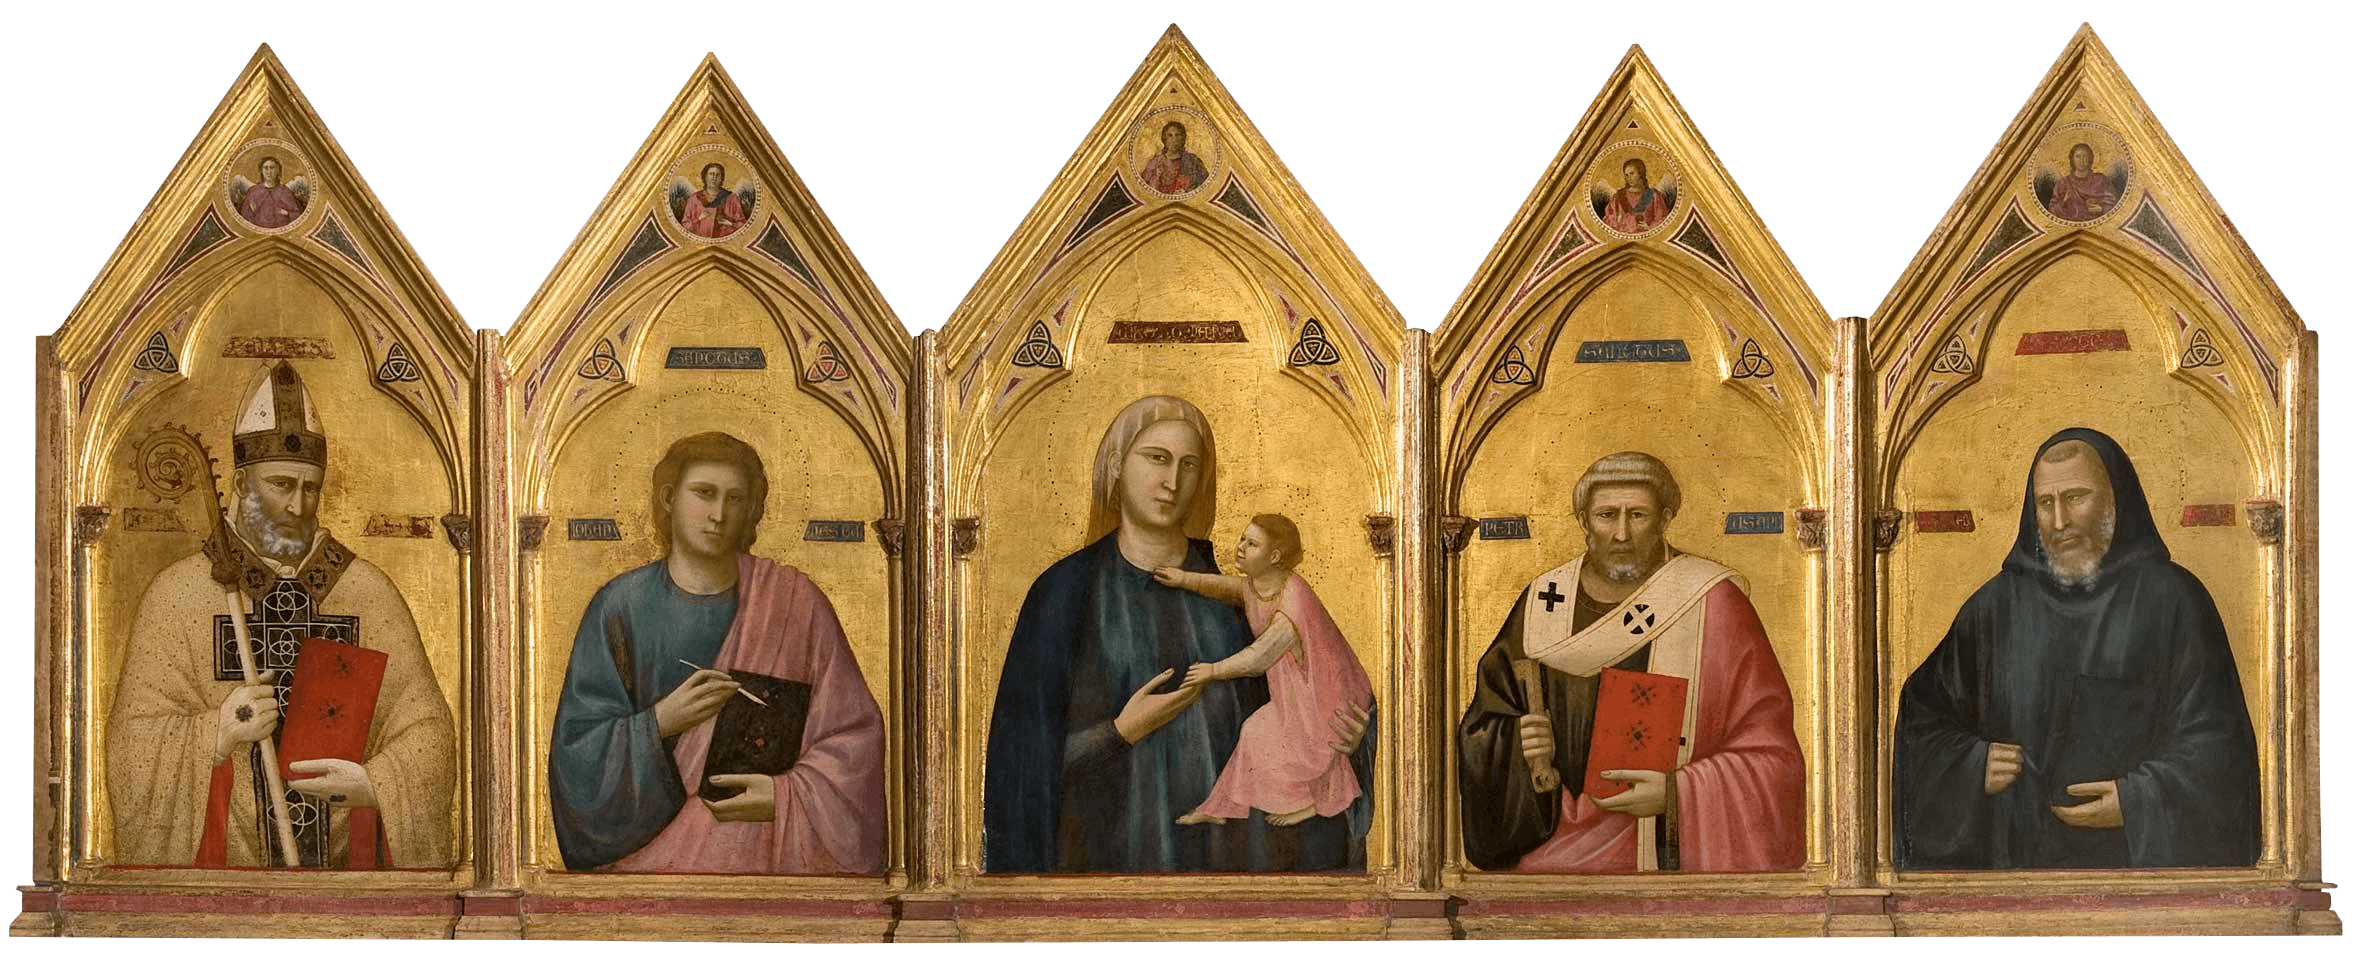 Badia Polyptych, Giotto di Bondone